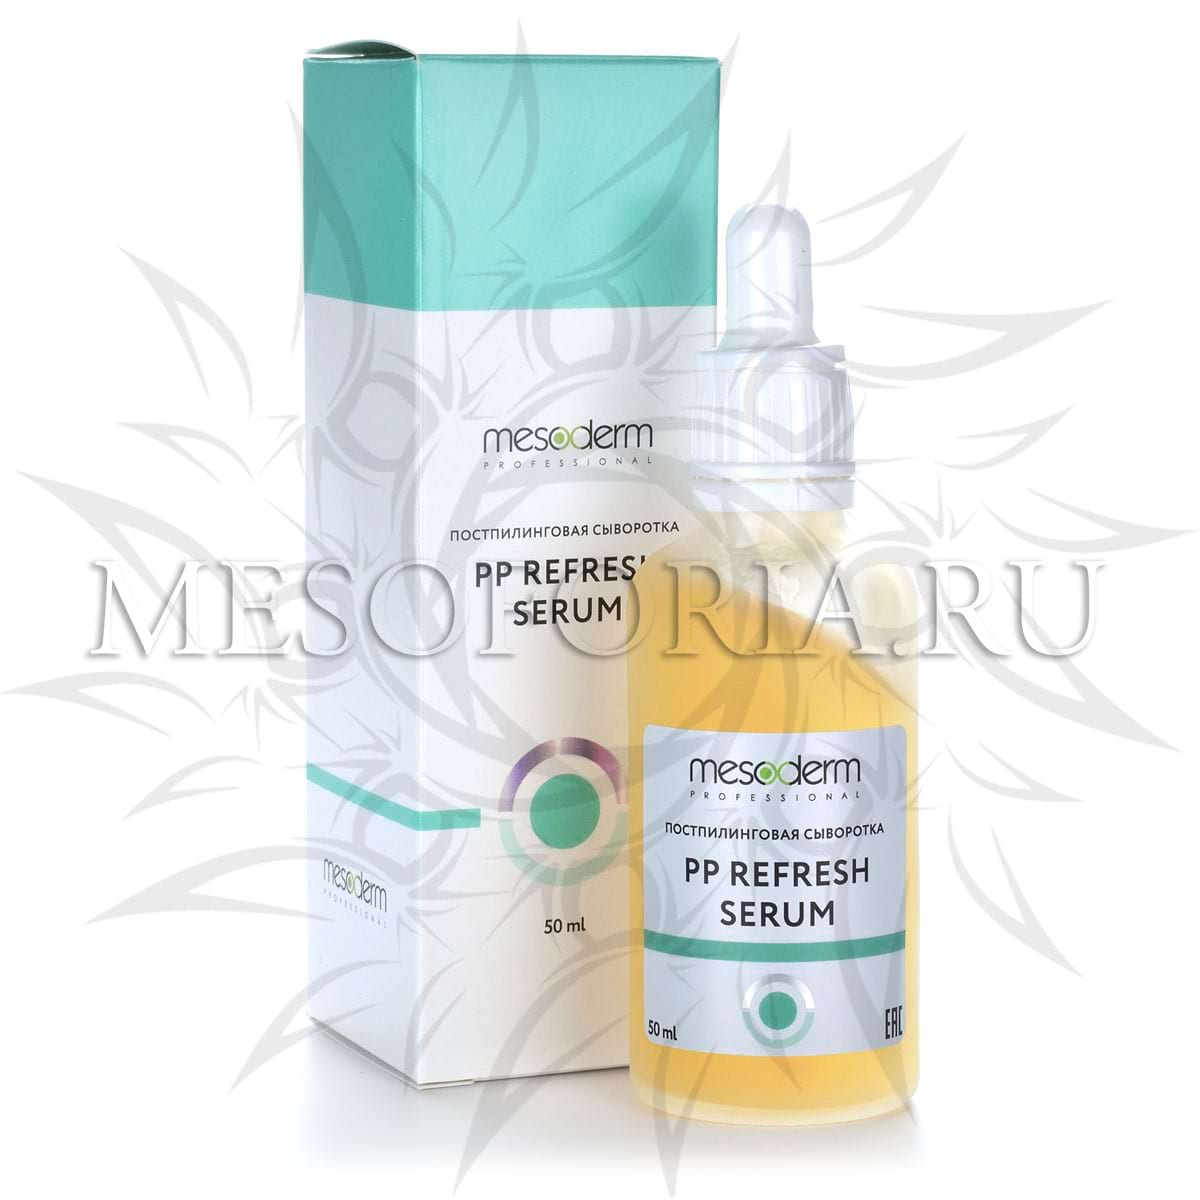 Постпилинговая регенерирующая сыворотка с охлаждающим эффектом / PP Refresh Serum, Mesoderm (Мезодерм), 50 мл